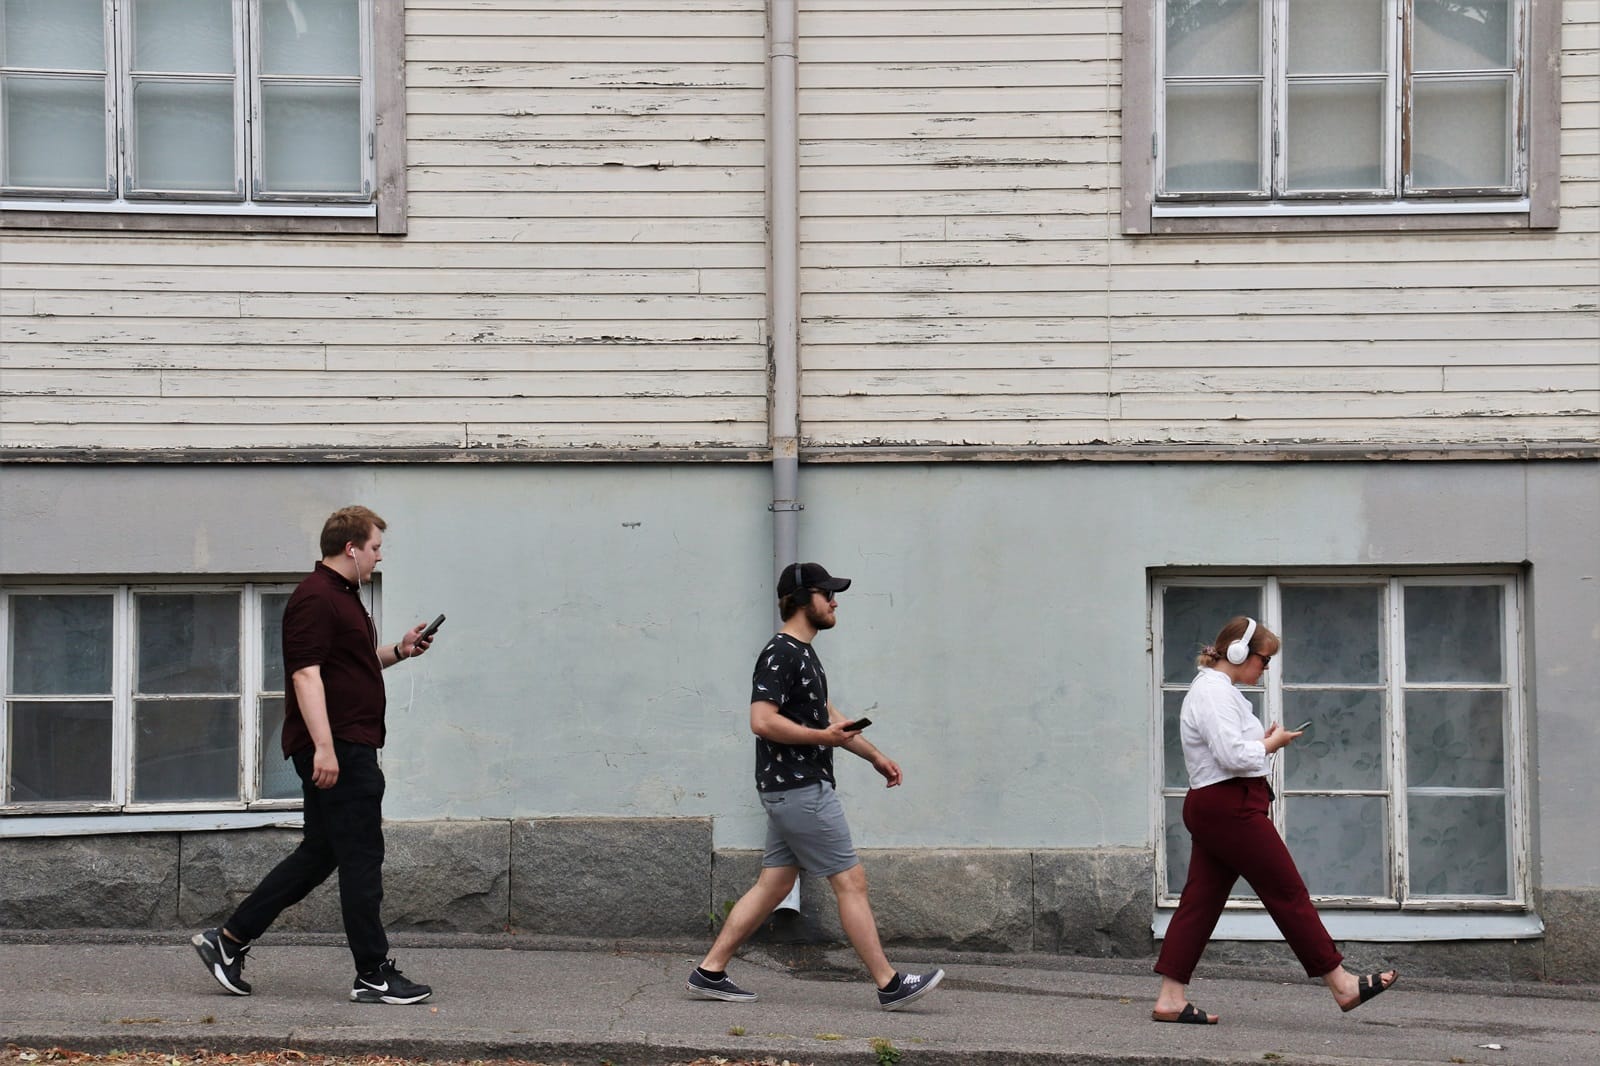 Valokuva. Nuoria henkilöitä kävelemässä kaupunkimaisessa ympäristössä. Kolme henkilöä.